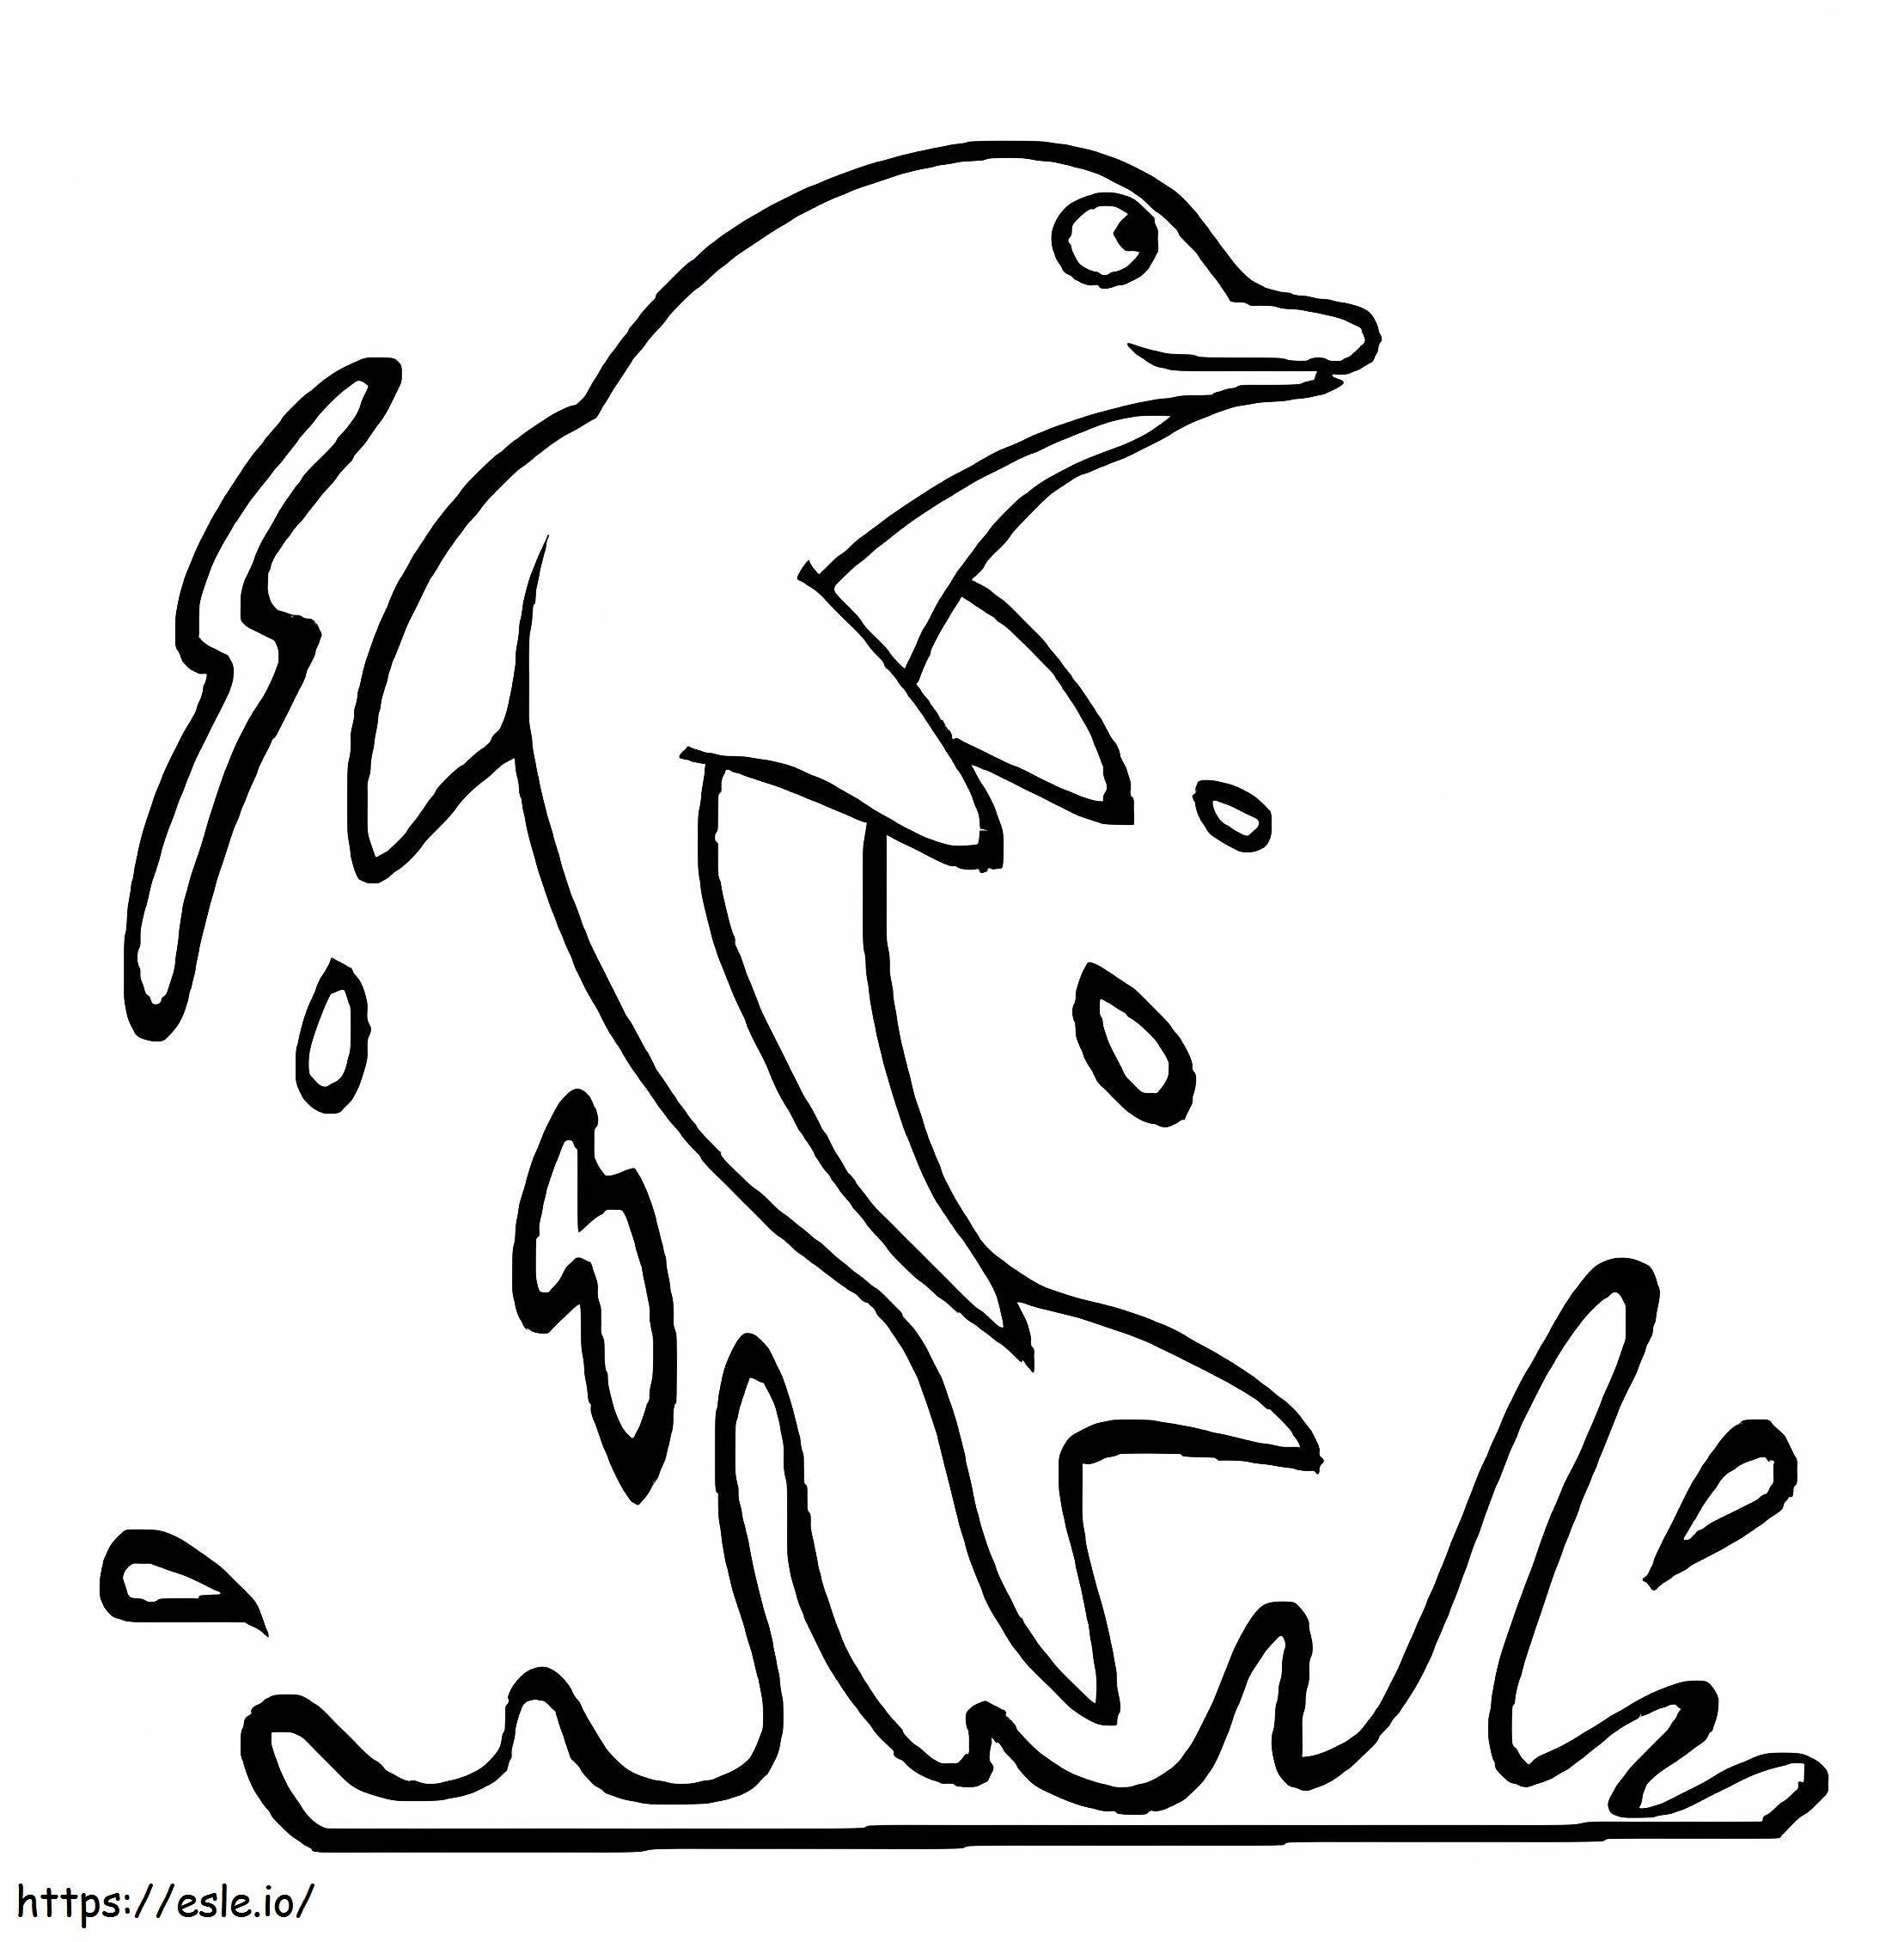 Podstawowy rysunek skoku delfina kolorowanka